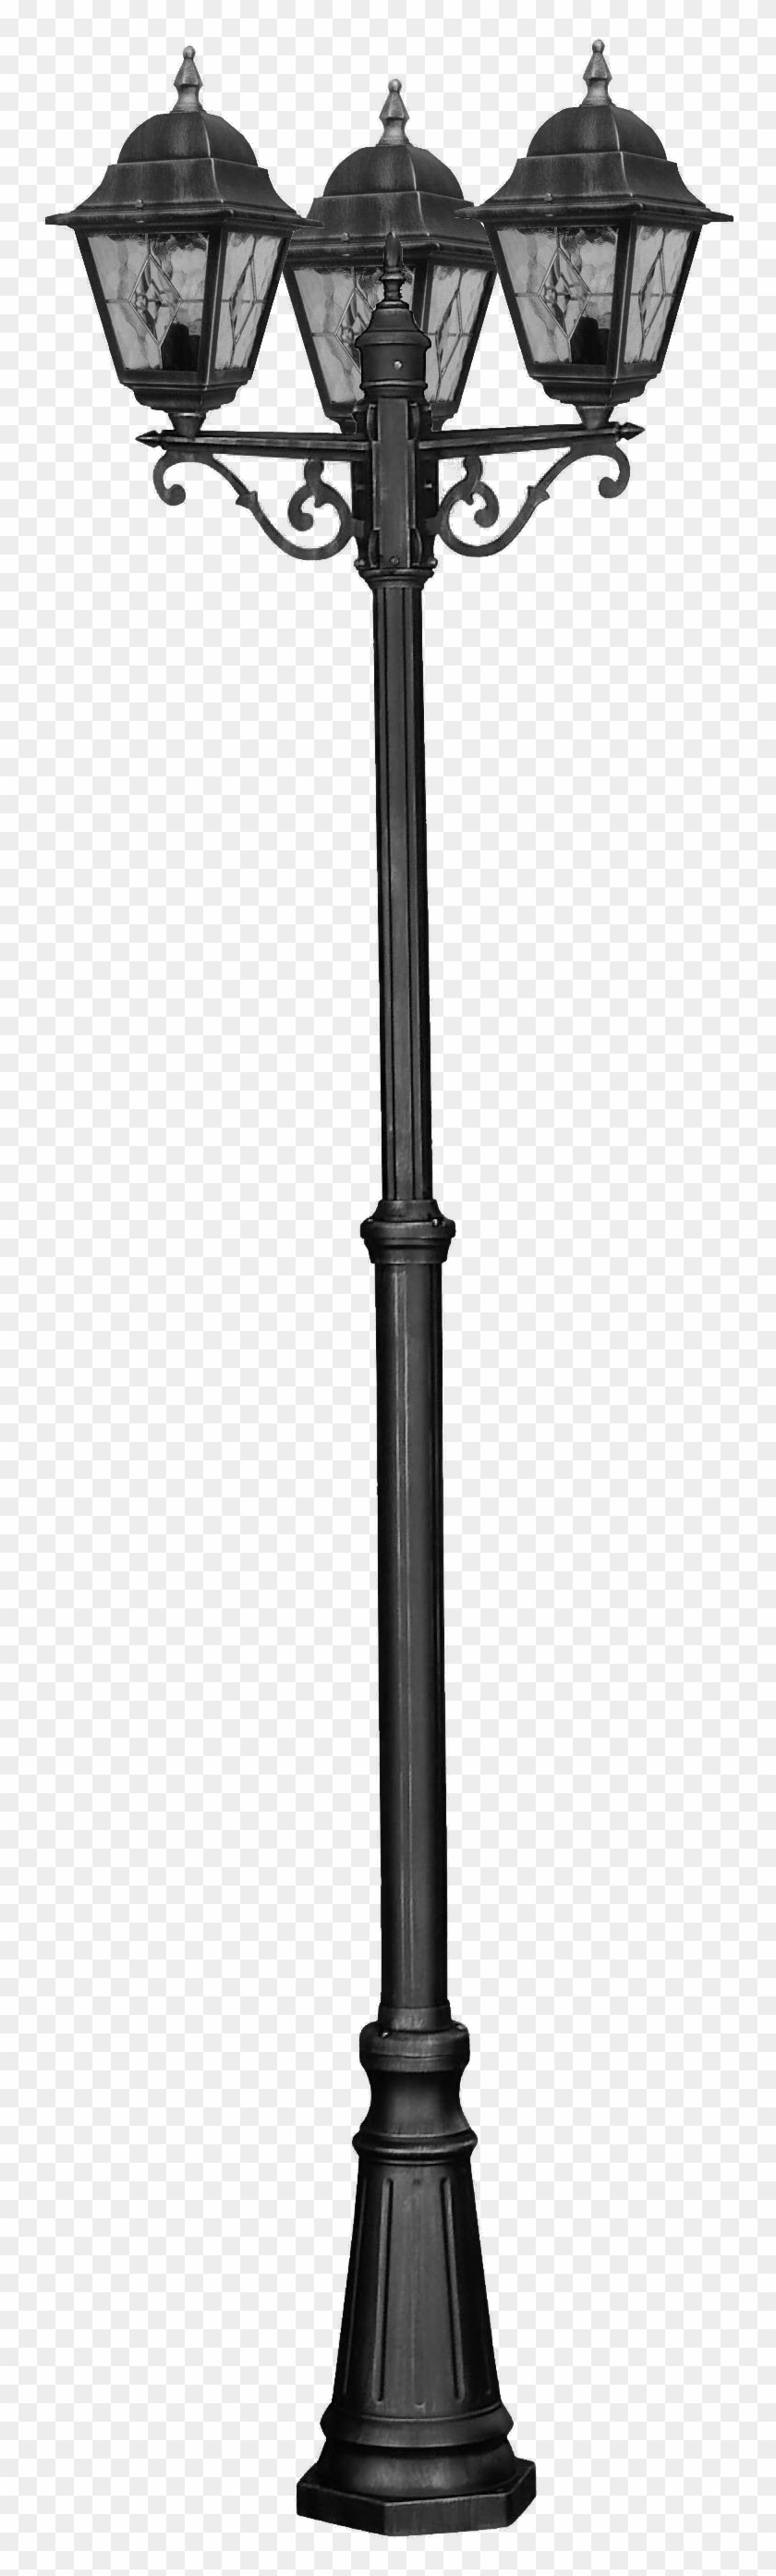 Lantern Pole Png By Camelfobia On Deviantart - Light Pole Photoshop #600787